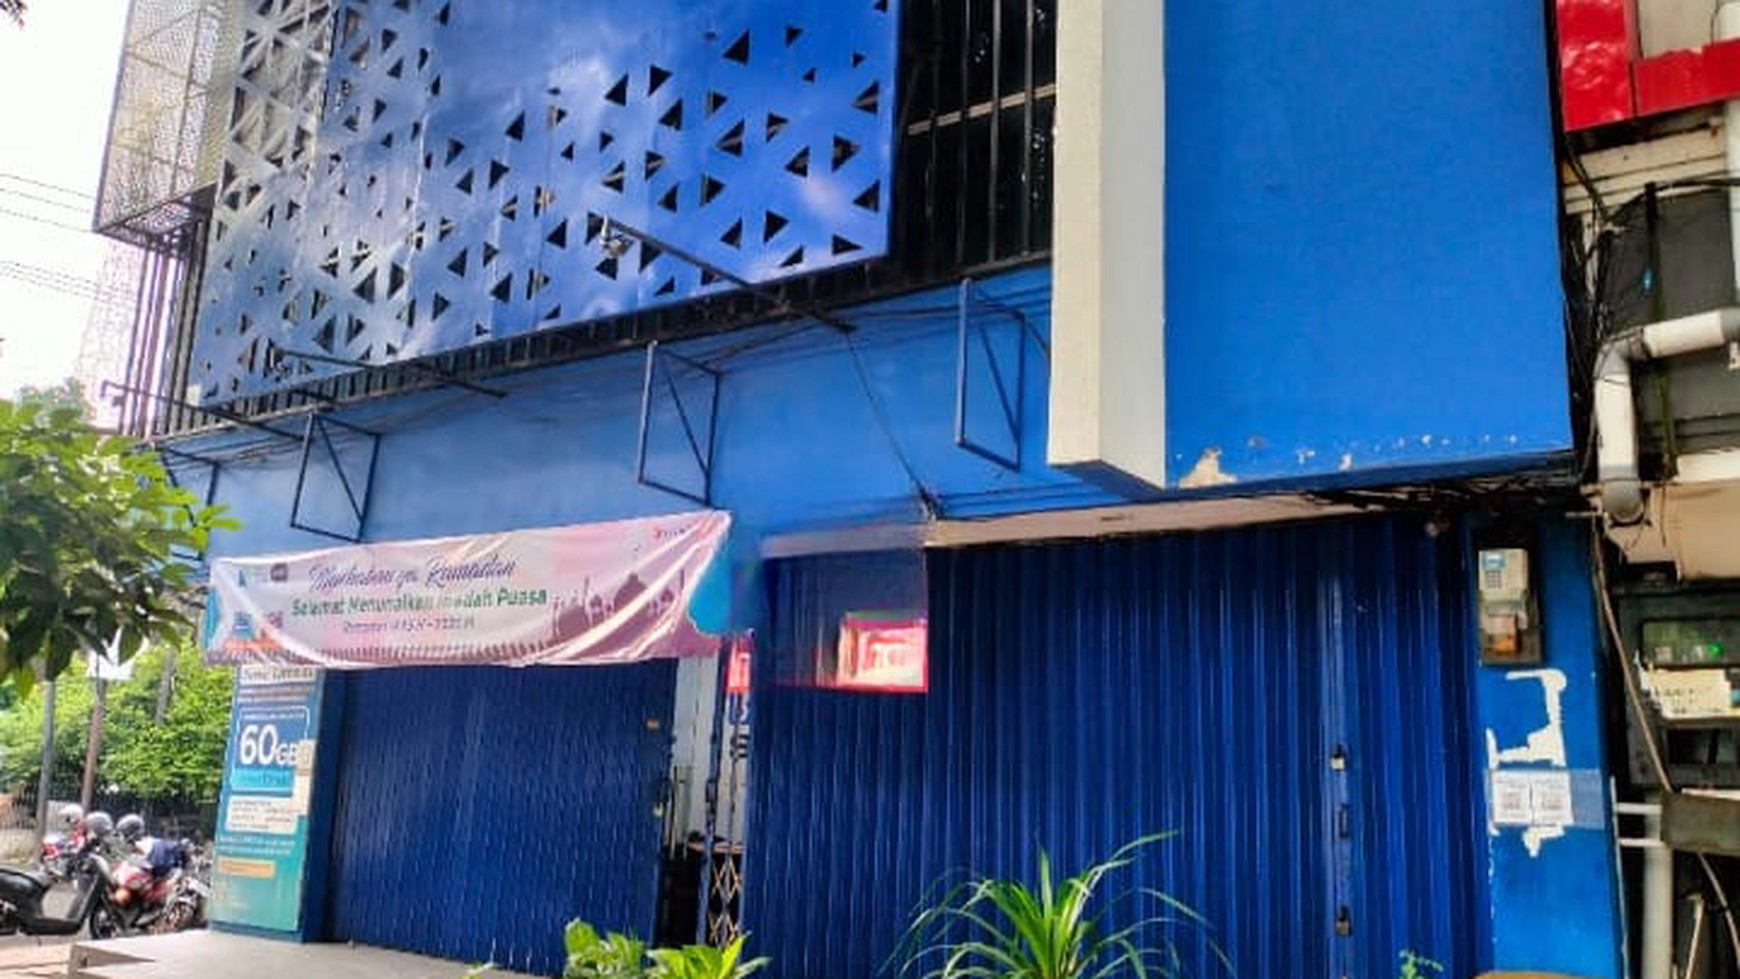 Disewakan 2 ruko gandeng menjadi 1, Jl. Karimunjawa - Surabaya Pusat. (Depan Rumah Sakit Siloam)